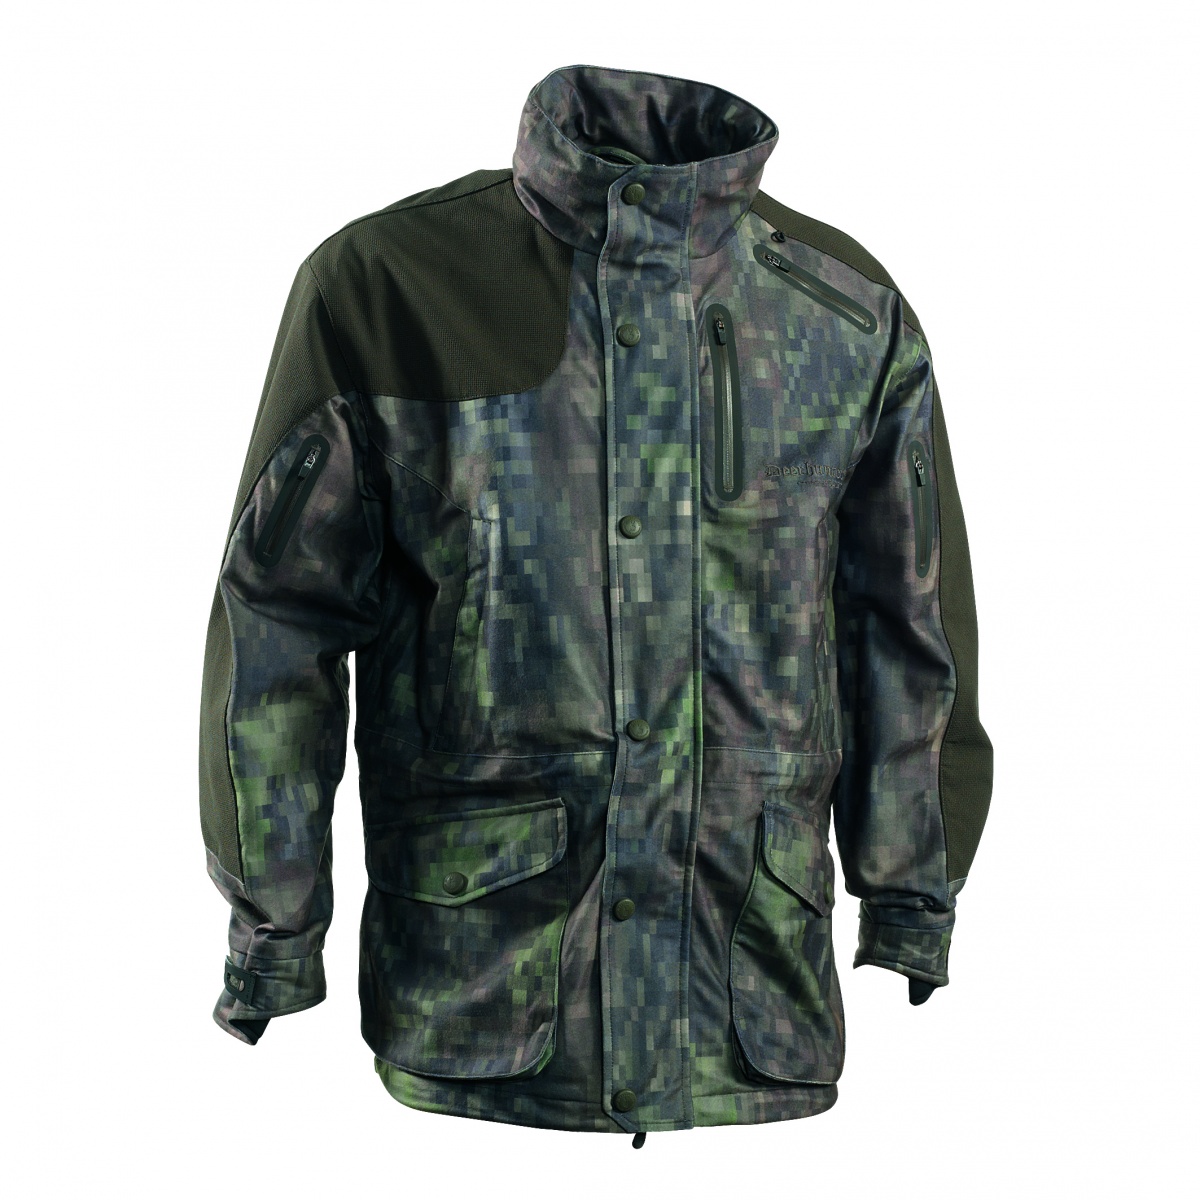 Куртка Deerhunter Recon: водонепроницаемые молнии, удобно расположенные функциональные карманы, укрепляющие детали из кордуры